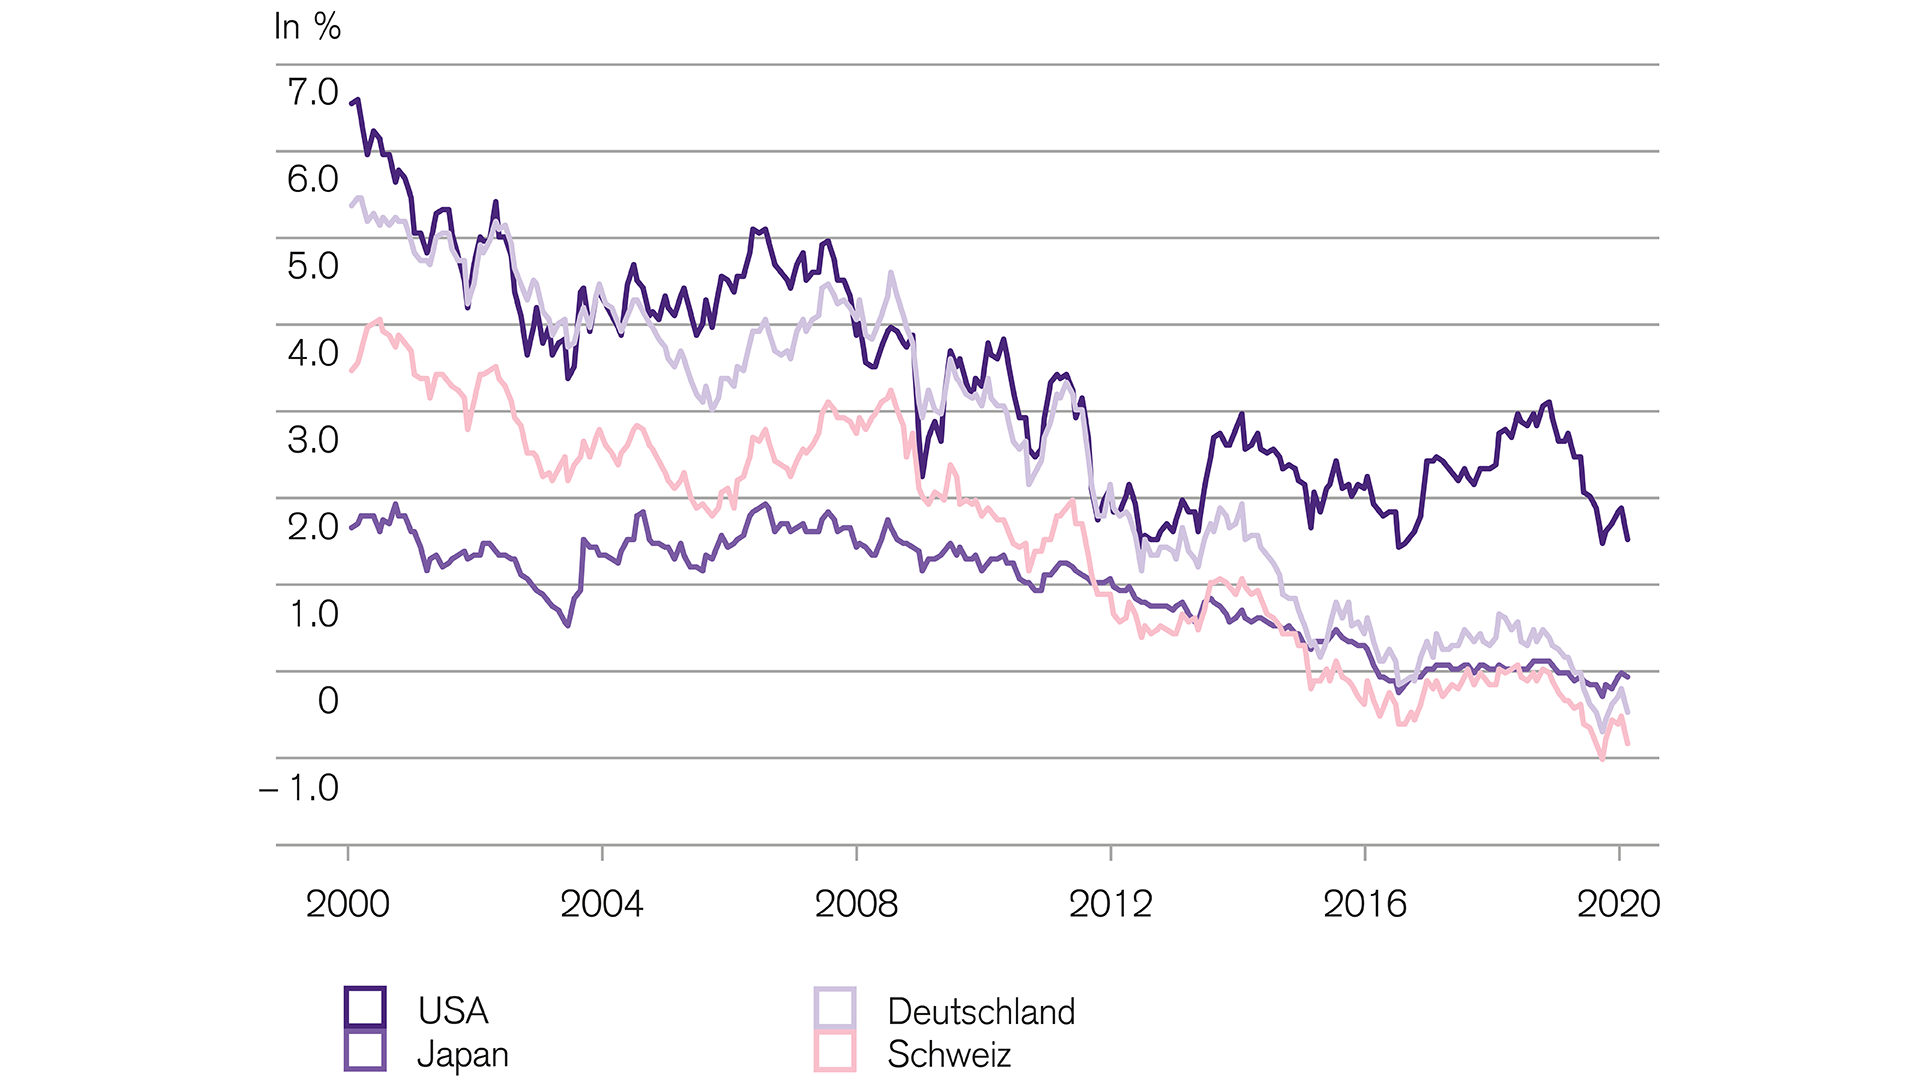 Obligationen renditen von staatsanleihen sinken immer tiefer